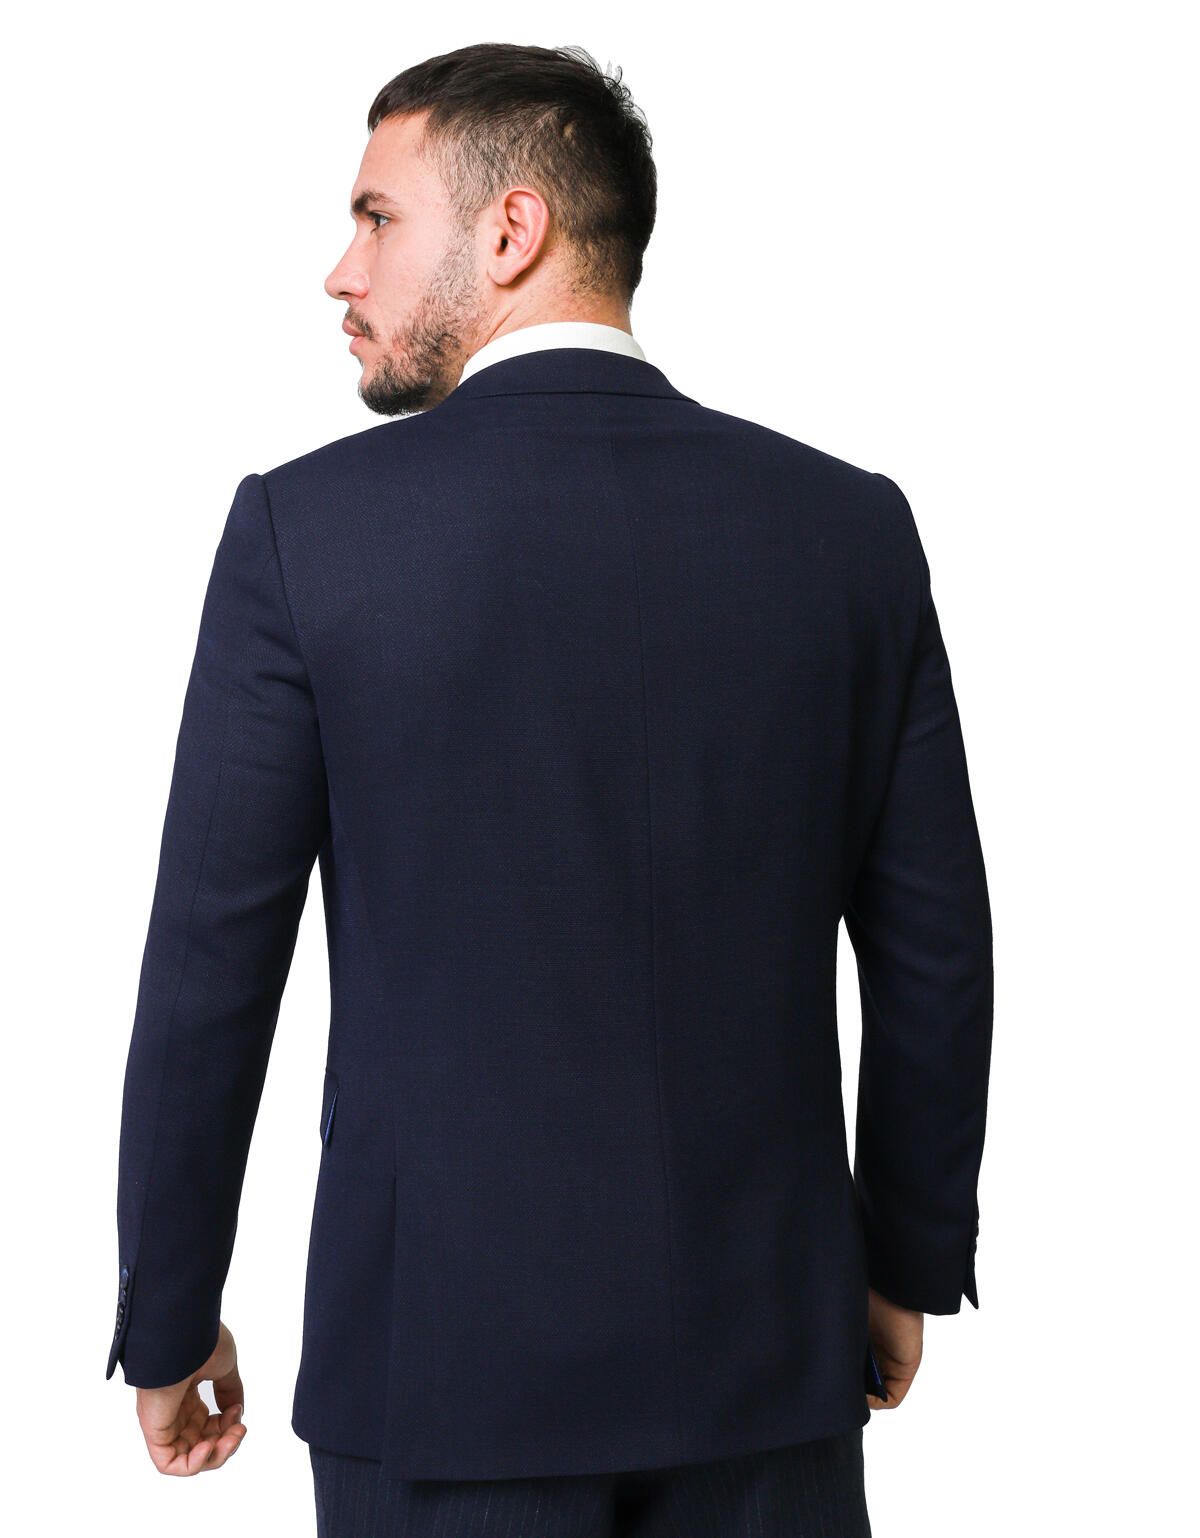 Классический мужской пиджак w.WEGENER | купить в интернет-магазине Olymp-Men